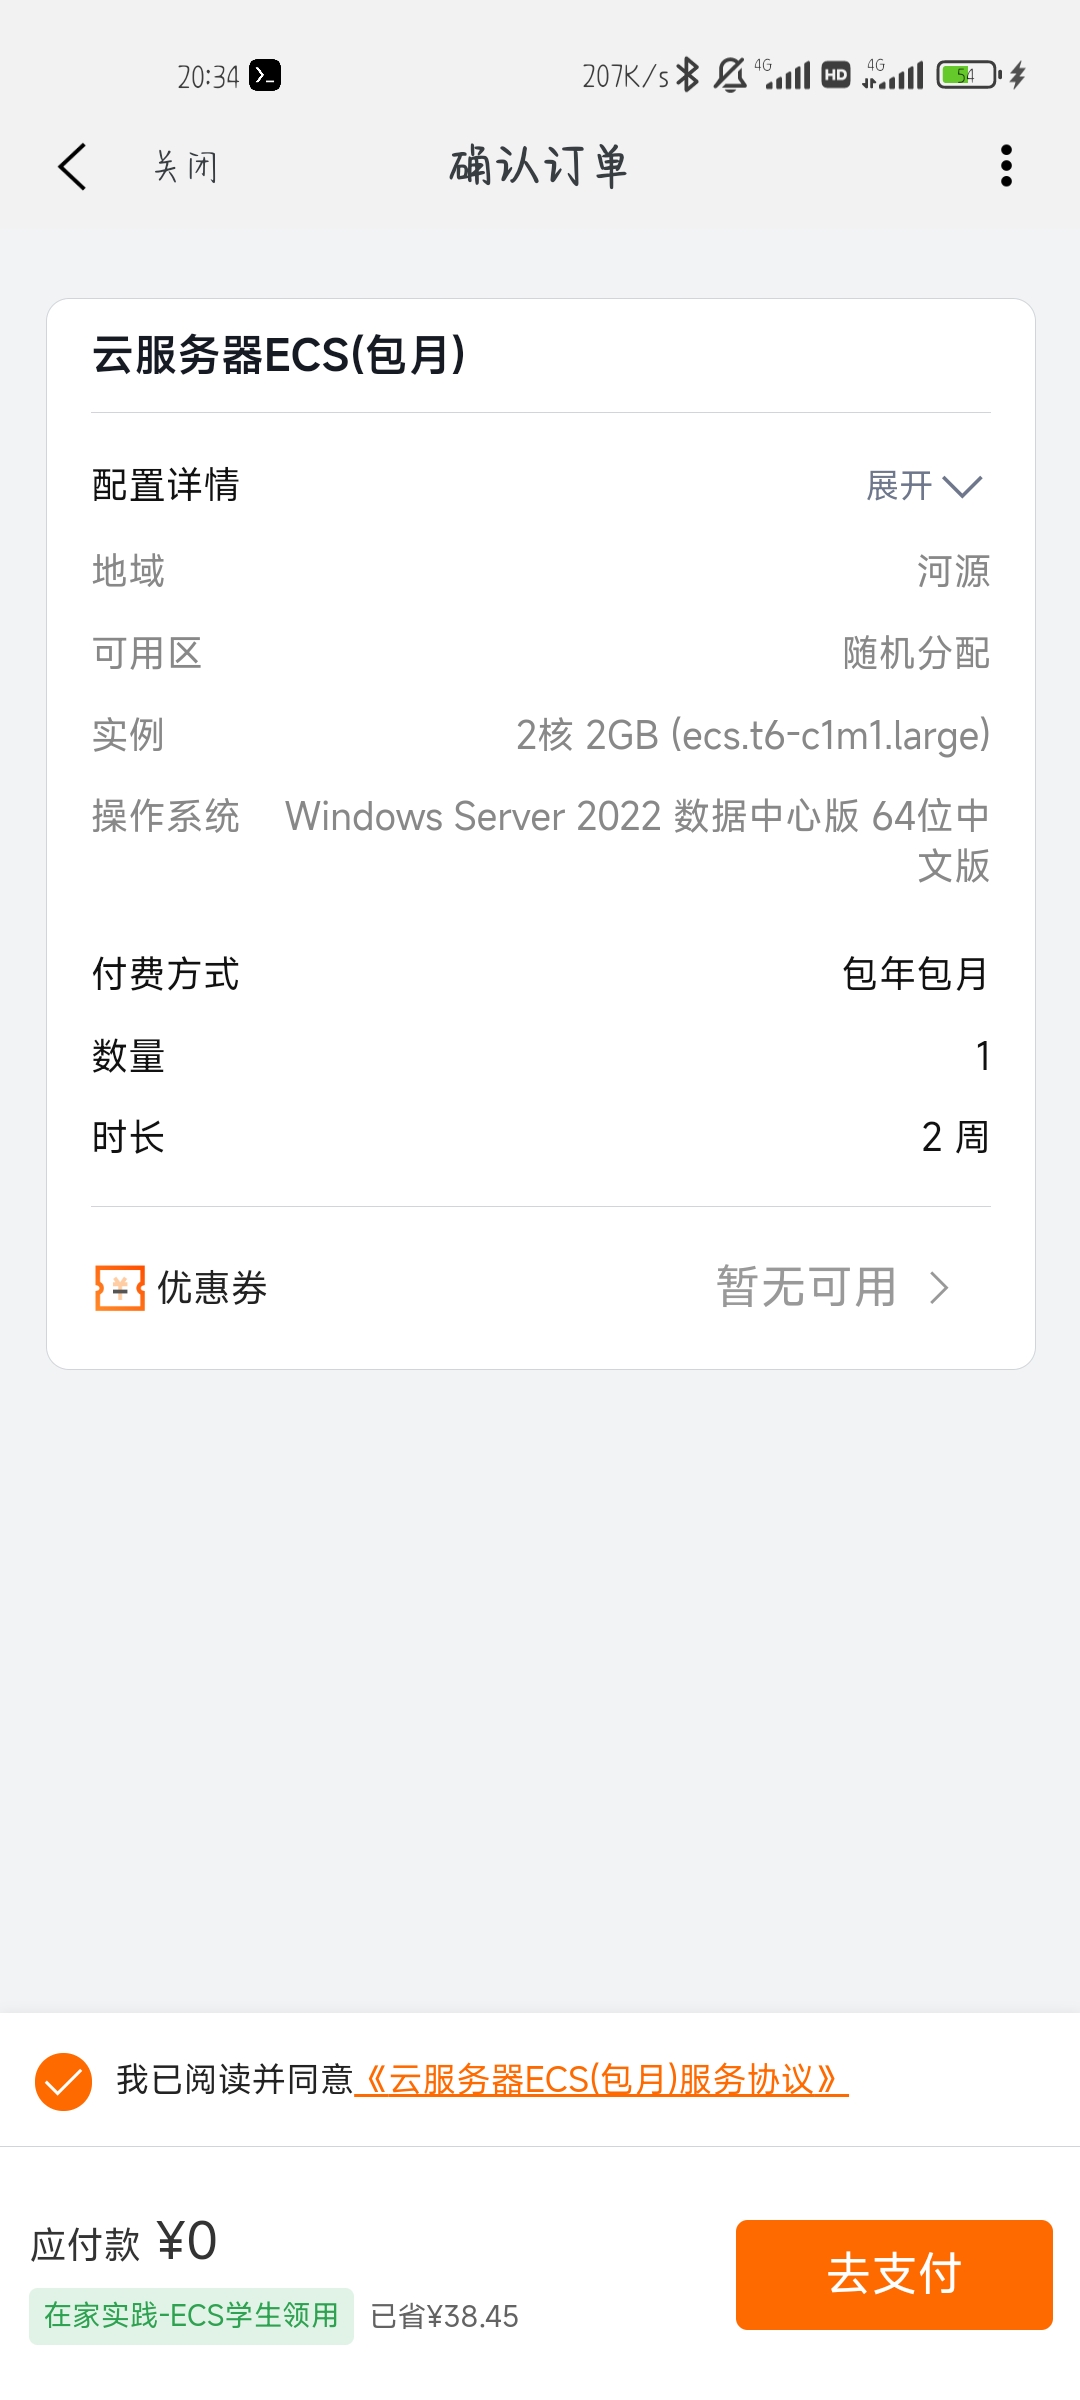 Screenshot_2022-12-08-20-34-01-762_com.alibaba.aliyun.jpg